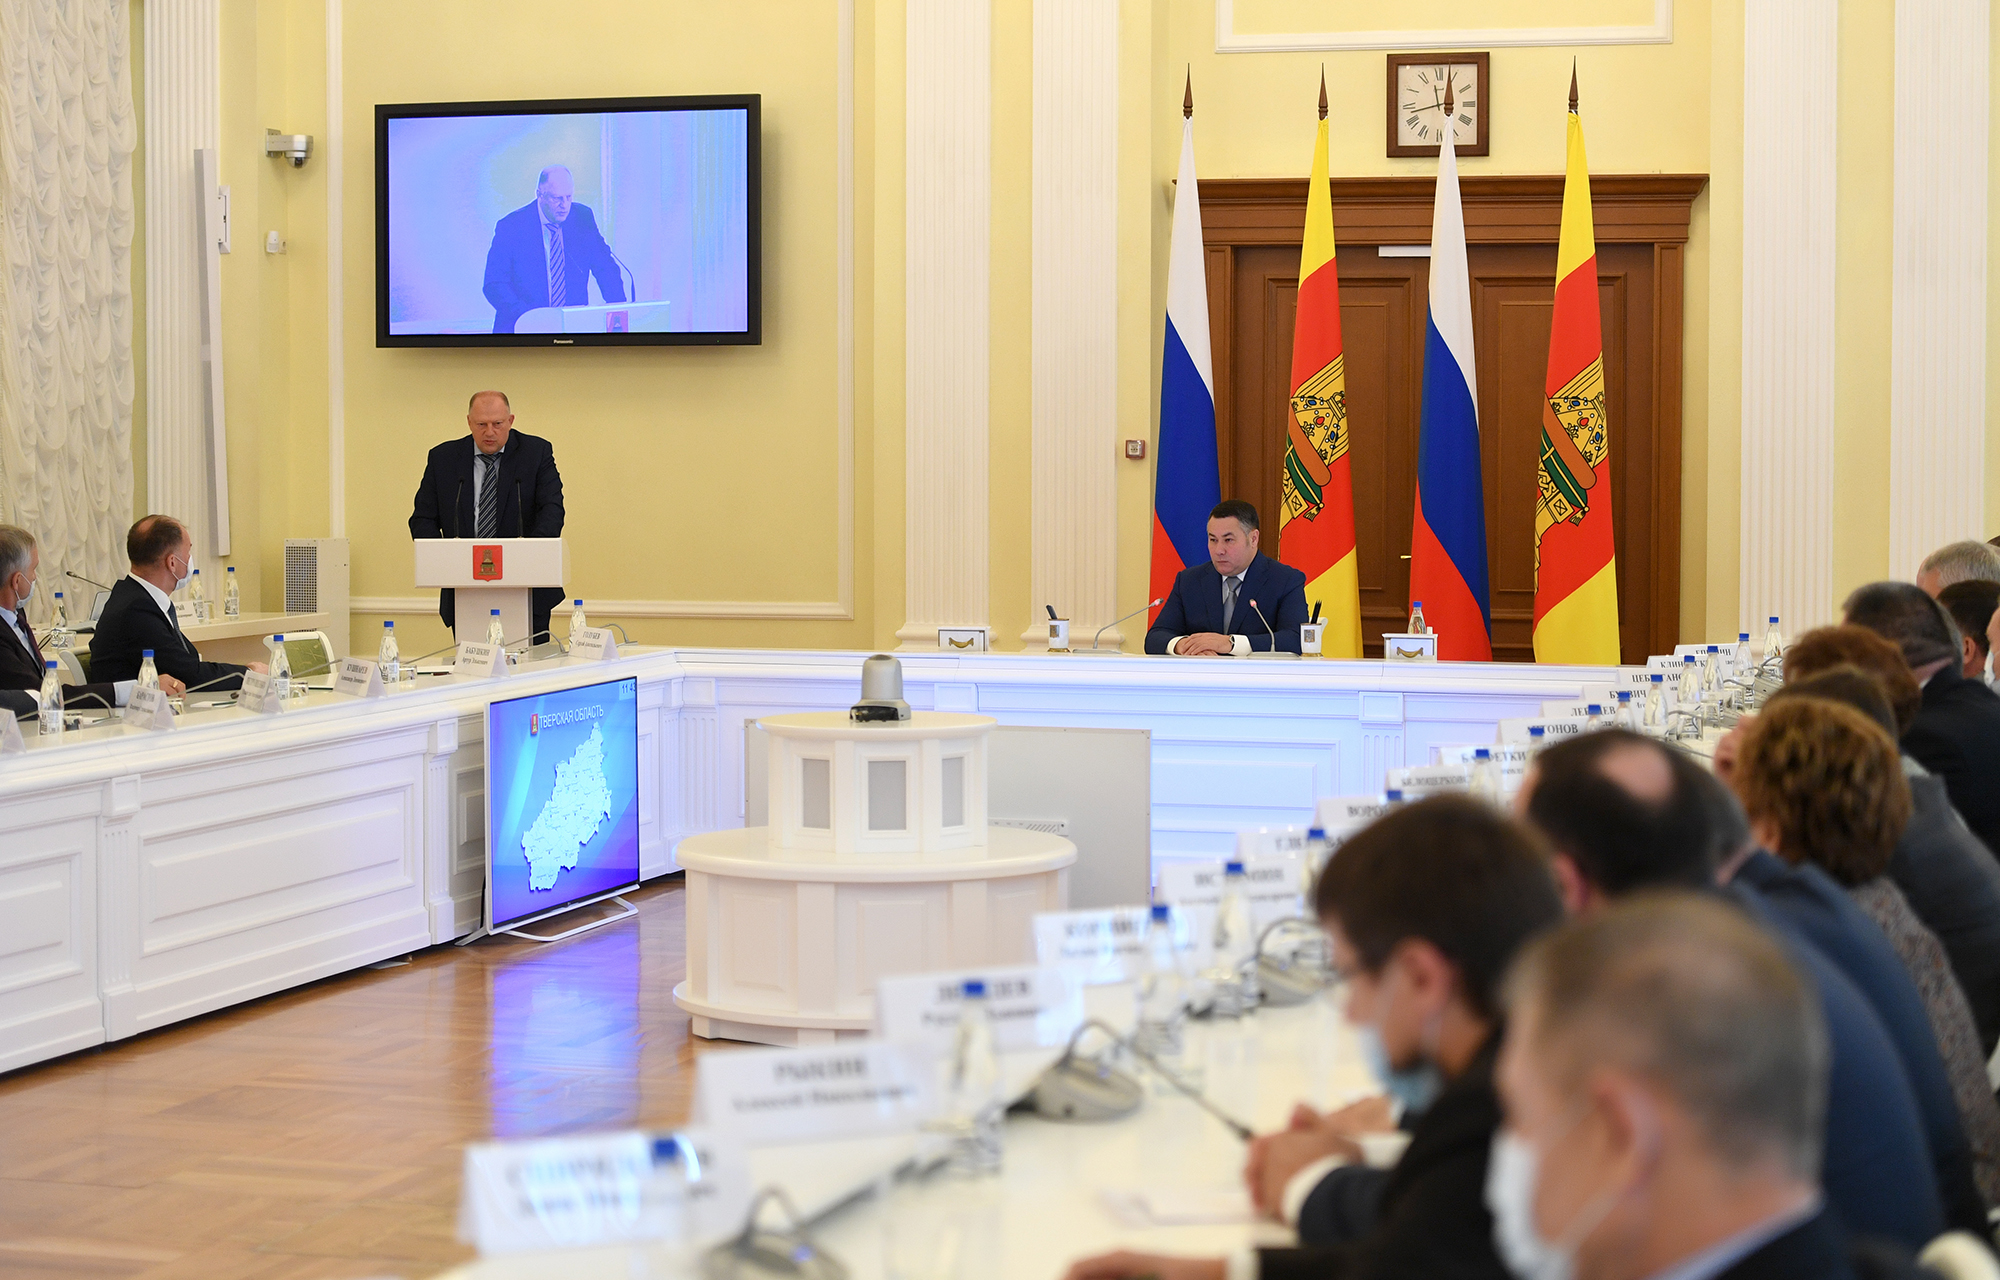 Губернатор Игорь Руденя поблагодарил депутатов шестого созыва регионального ЗакСобрания за совместную пятилетнюю работу